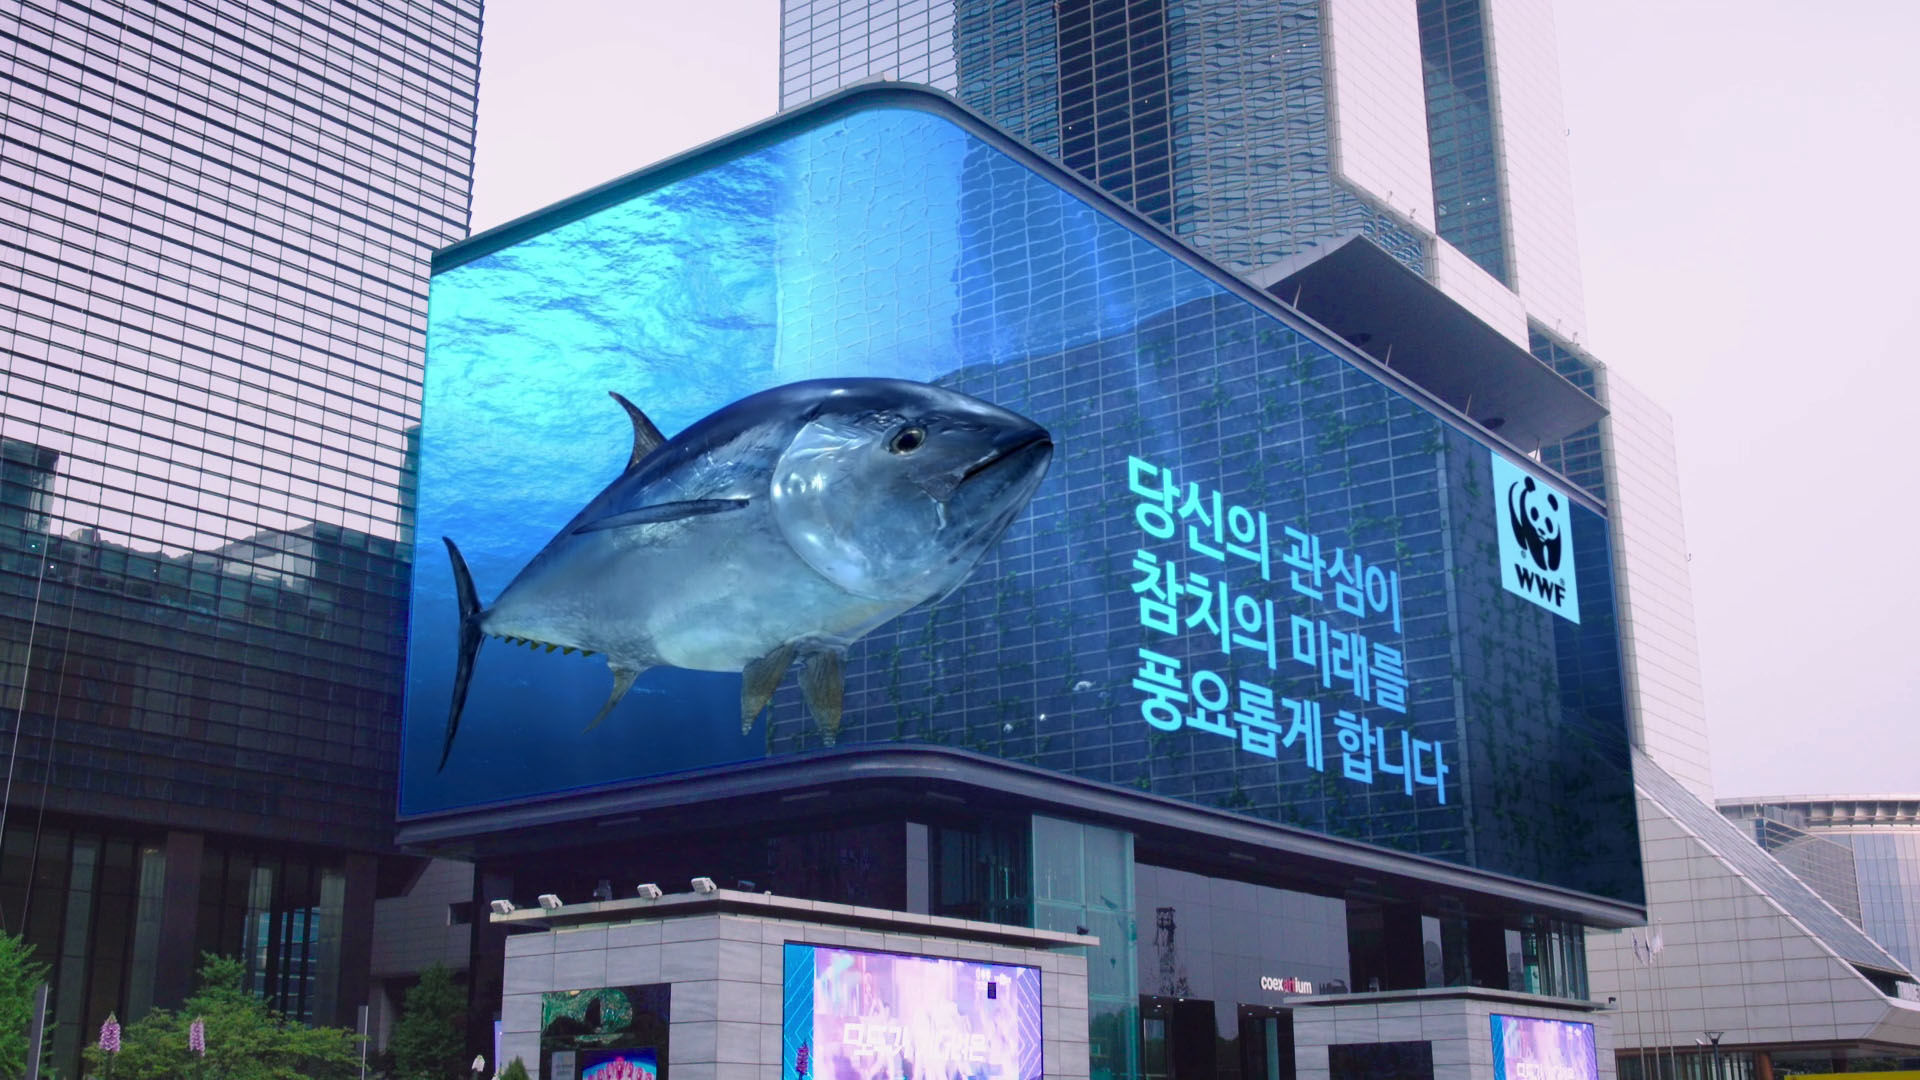 서울 삼성동 코엑스 외벽에 설치된 광고판에 초대형 참지떼가 등장하는 ‘튜네이도’ 캠페인. 제일기획 제공